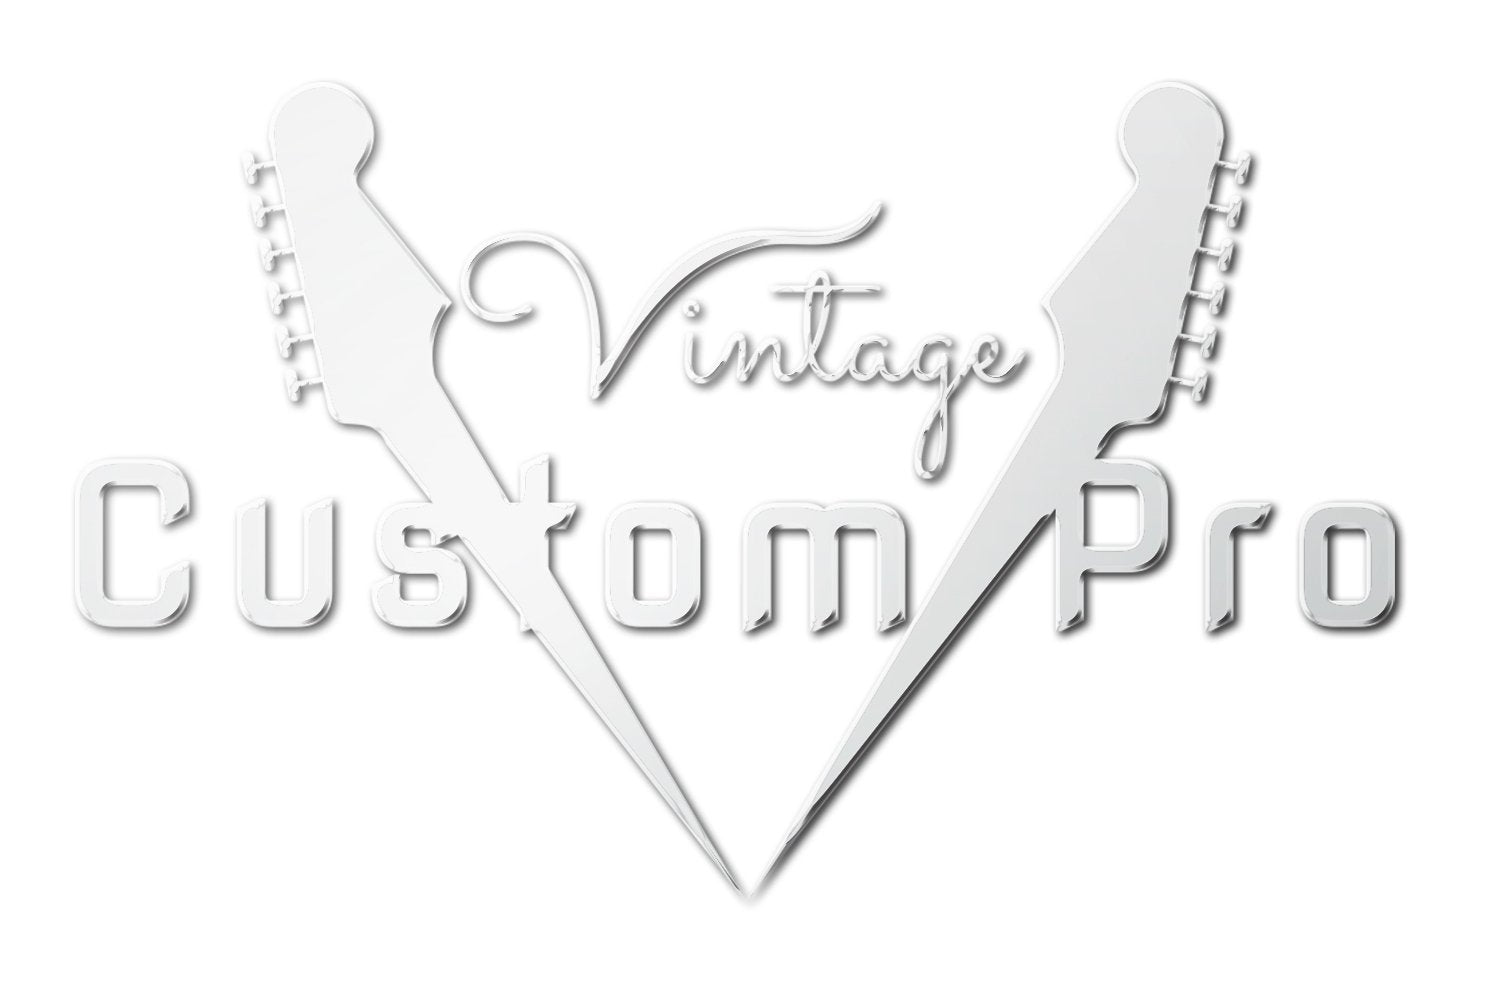 Vintage* V52BS Electric Guitar, Electric Guitar for sale at Richards Guitars.